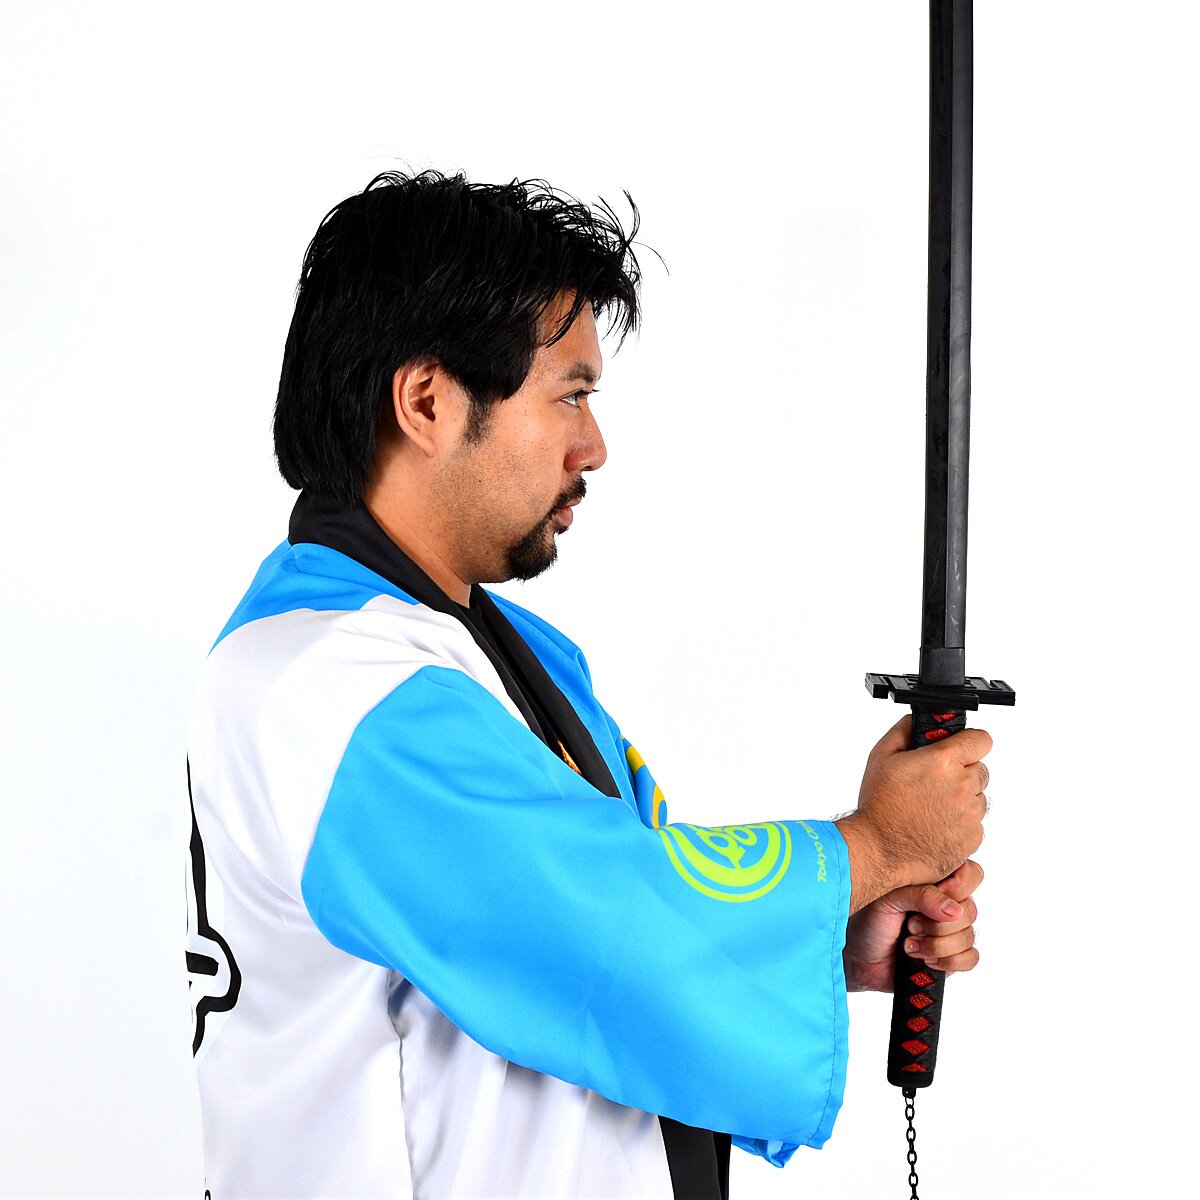 ichigo final form sword